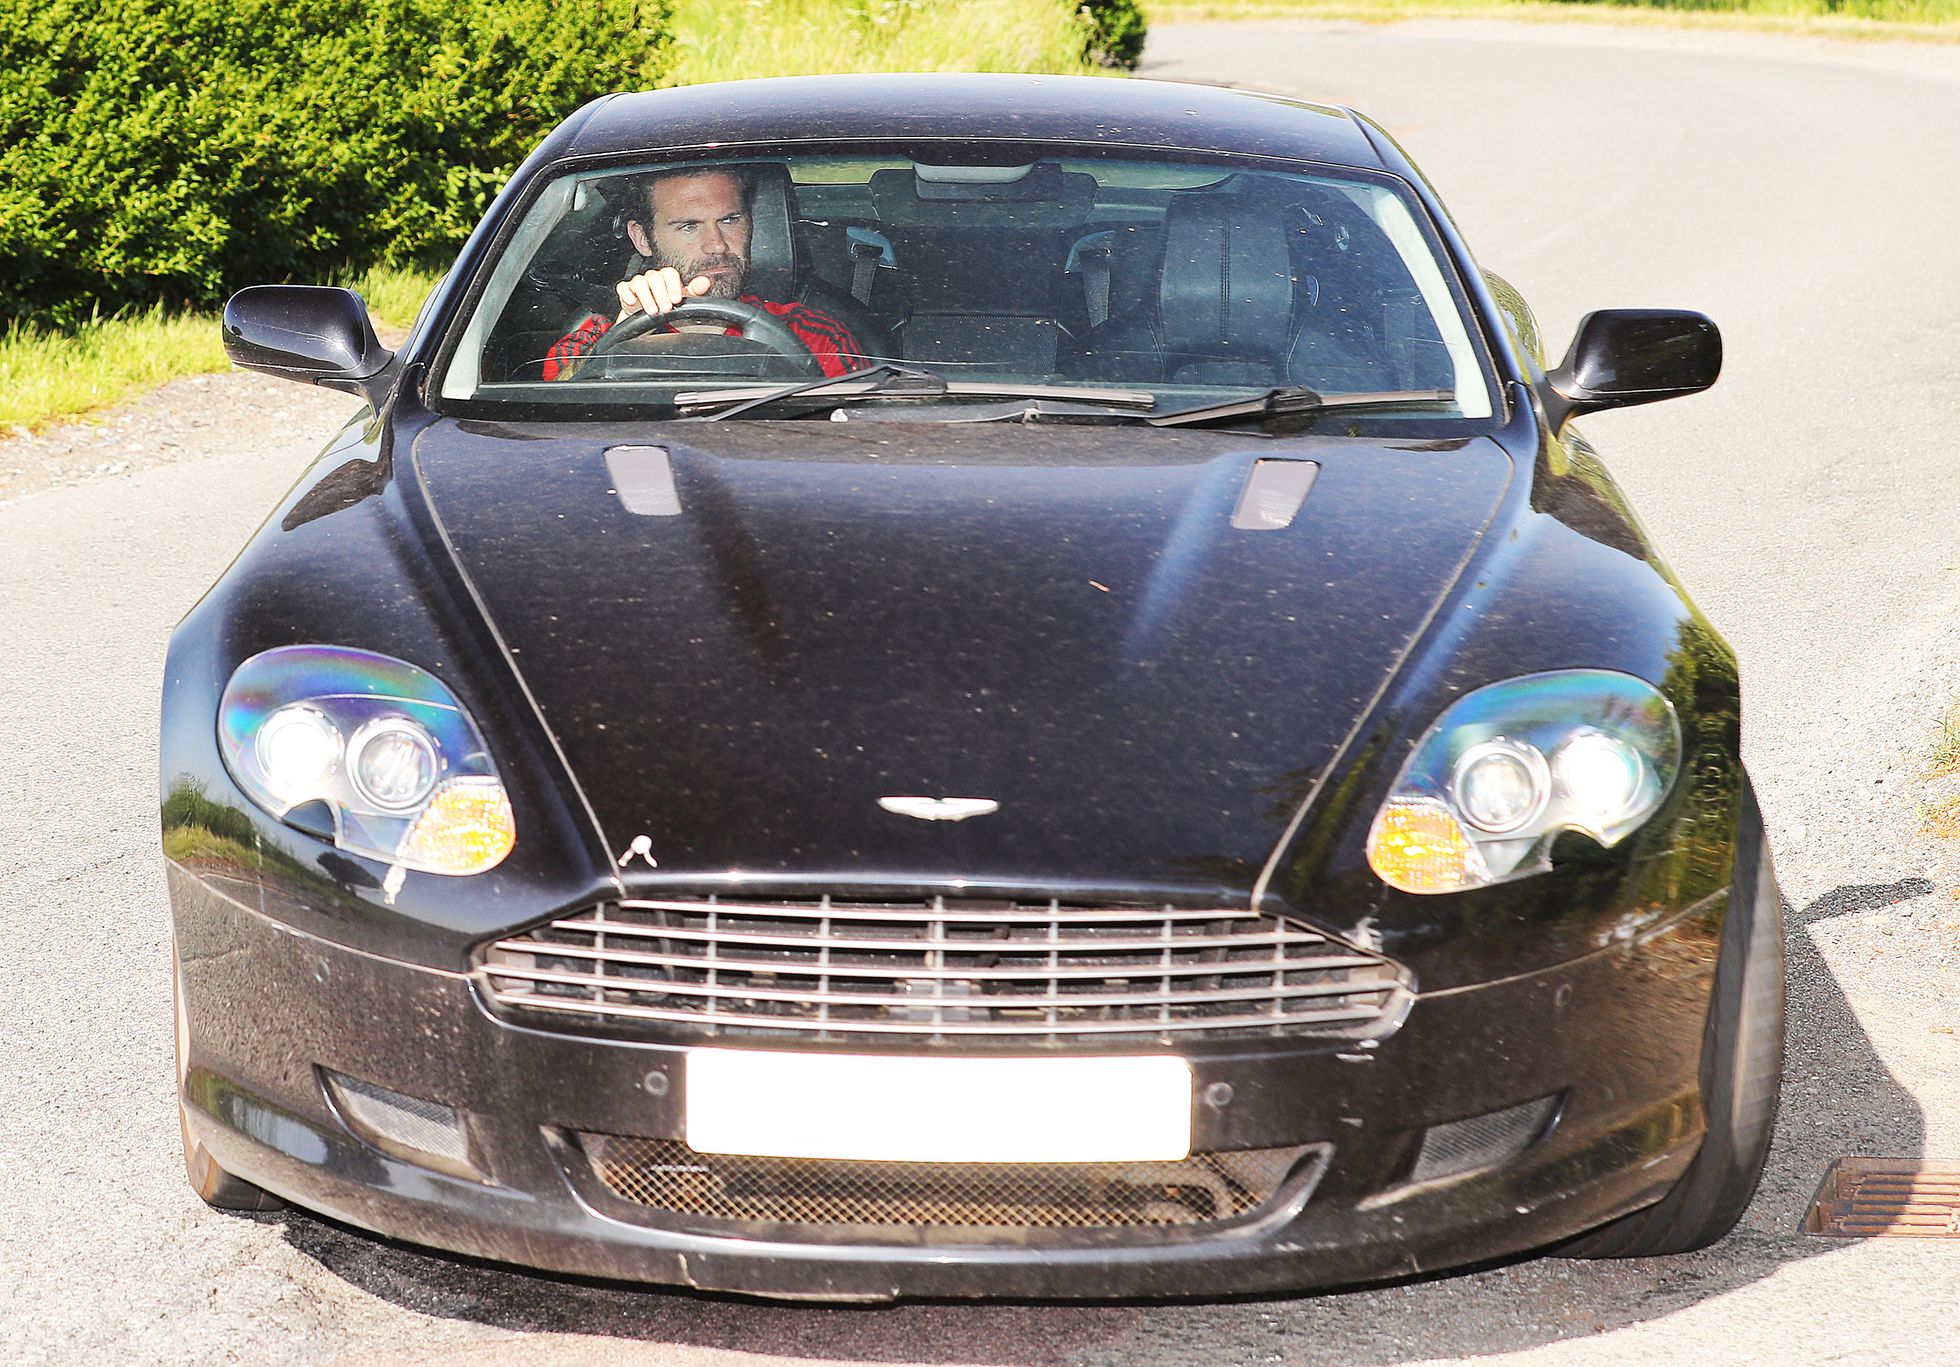 Hispaanlasest 32-aastane poolkaitsja Juan Mata oma lemmikauto Aston Martin DB9-ga. Auto hind on umbes 175 tuhat eurot. Hispaanlane jaoks pole see teab mis suur summa - täpselt tema nädala töötasu.